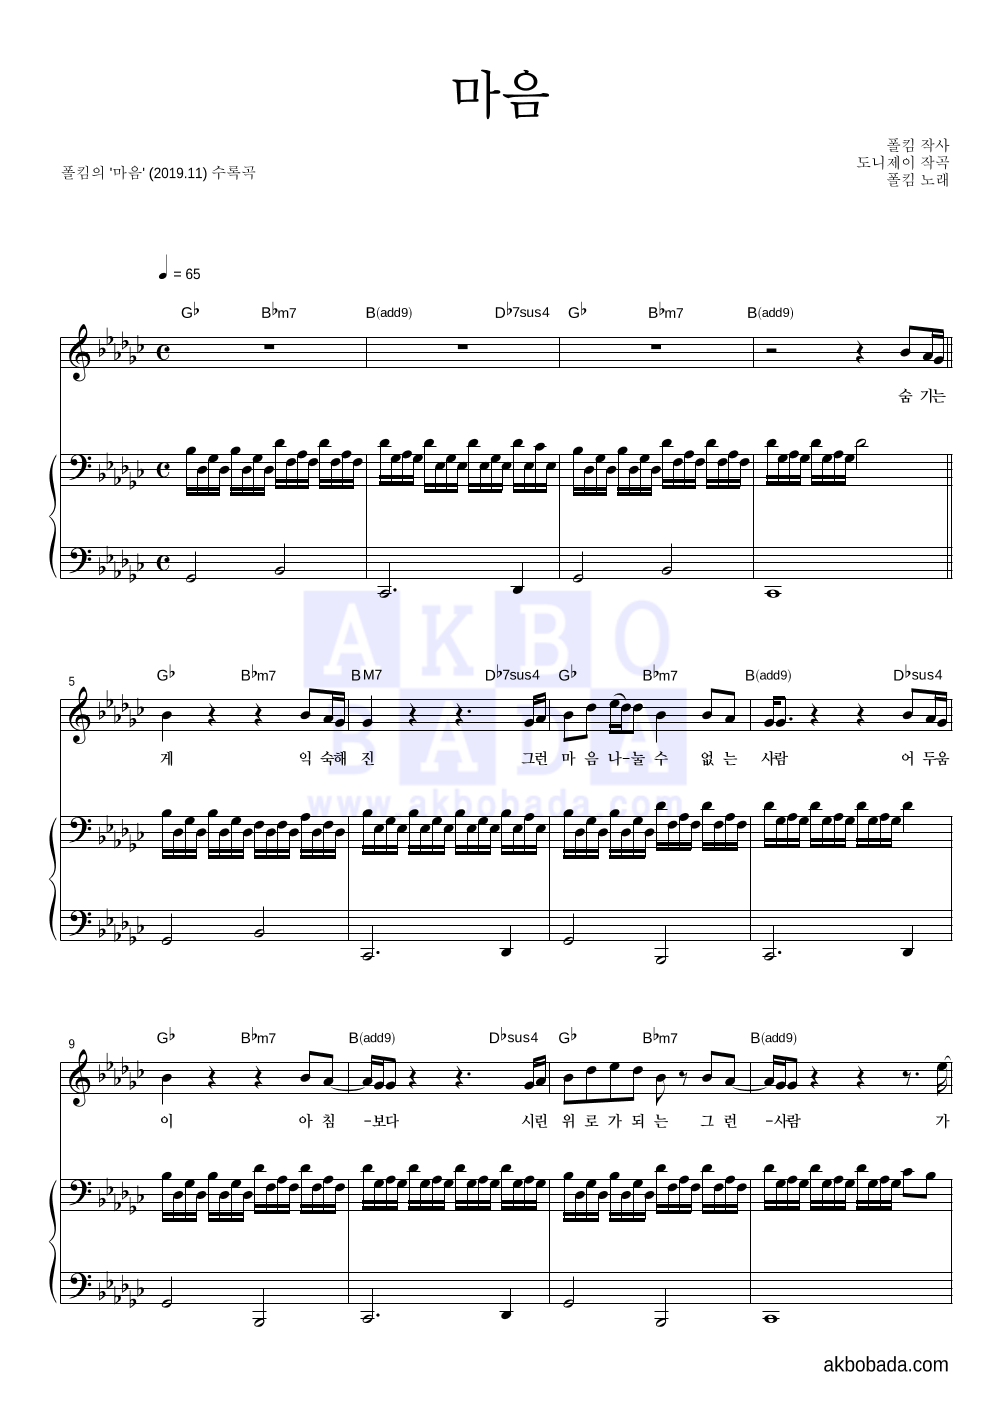 폴킴 - 마음 피아노 3단 악보 